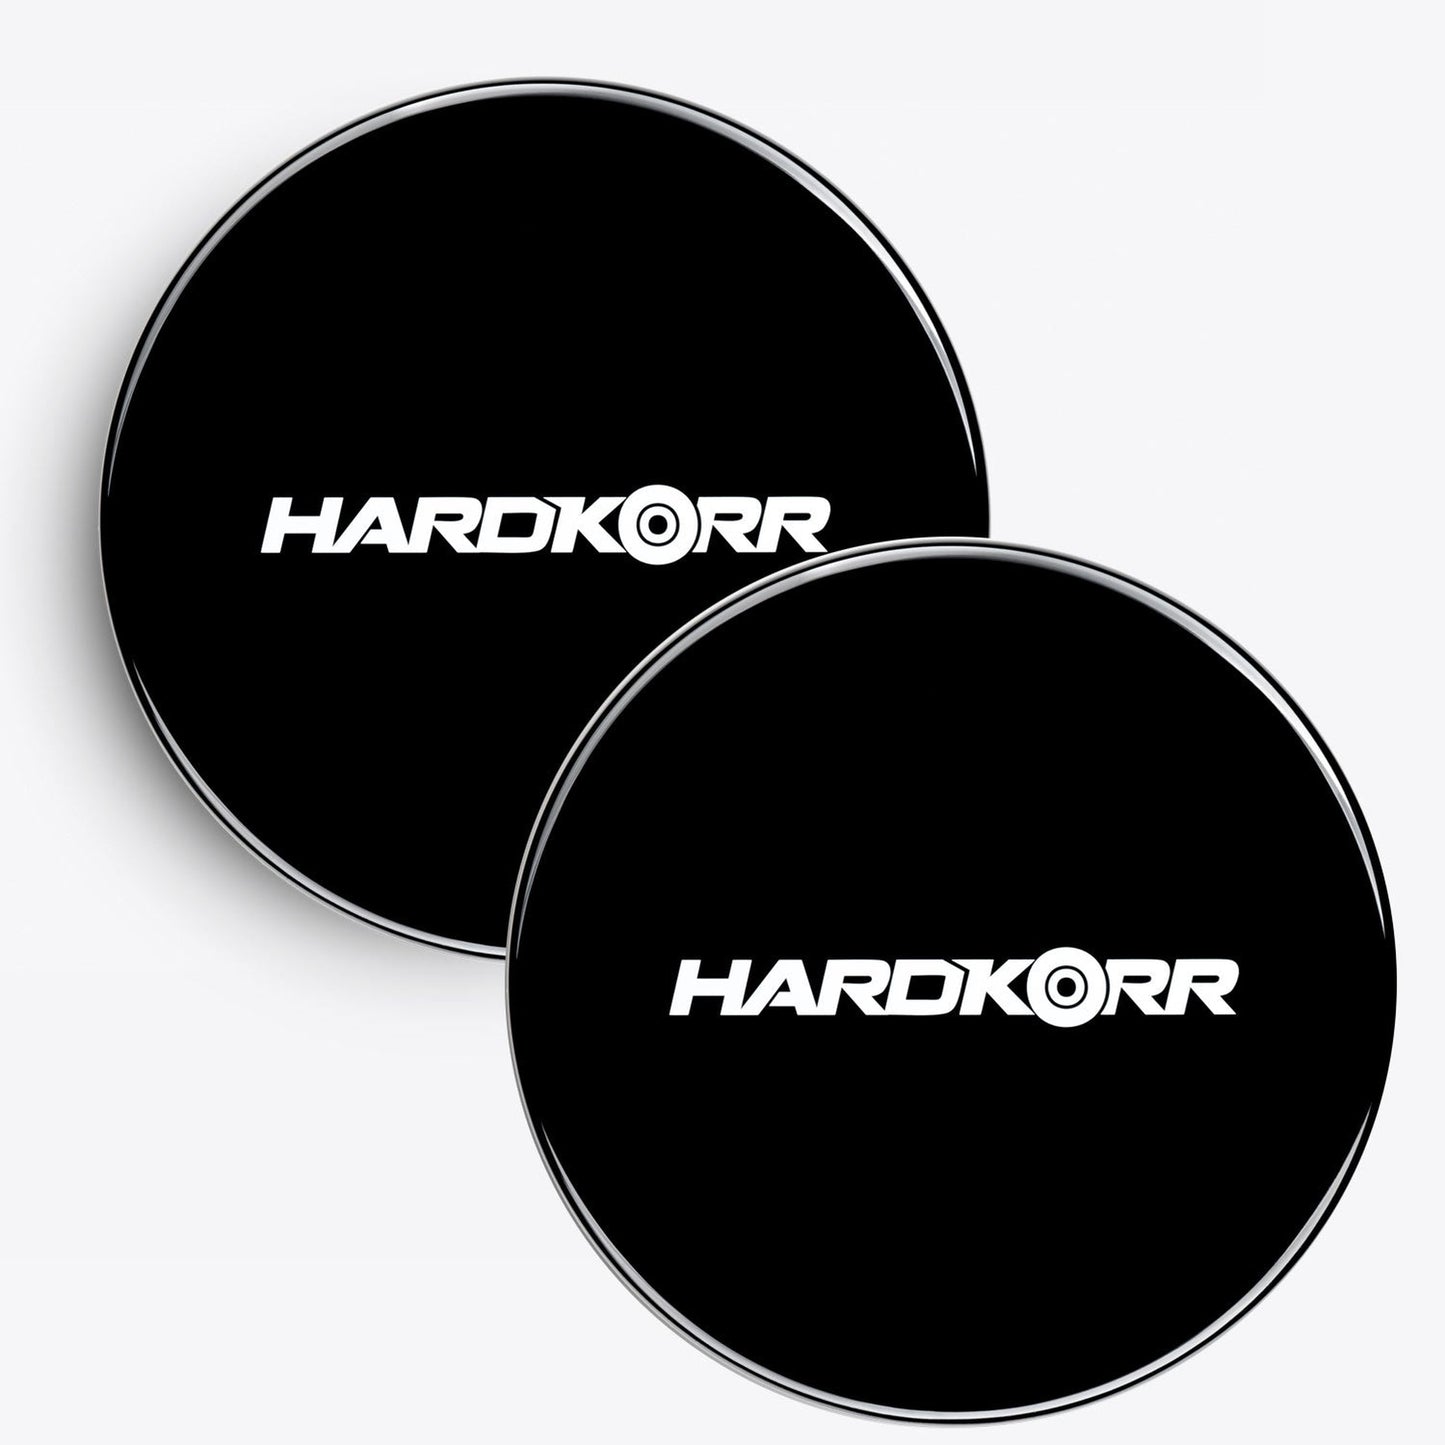 Hard Korr Black Light Cover 9" - Pair